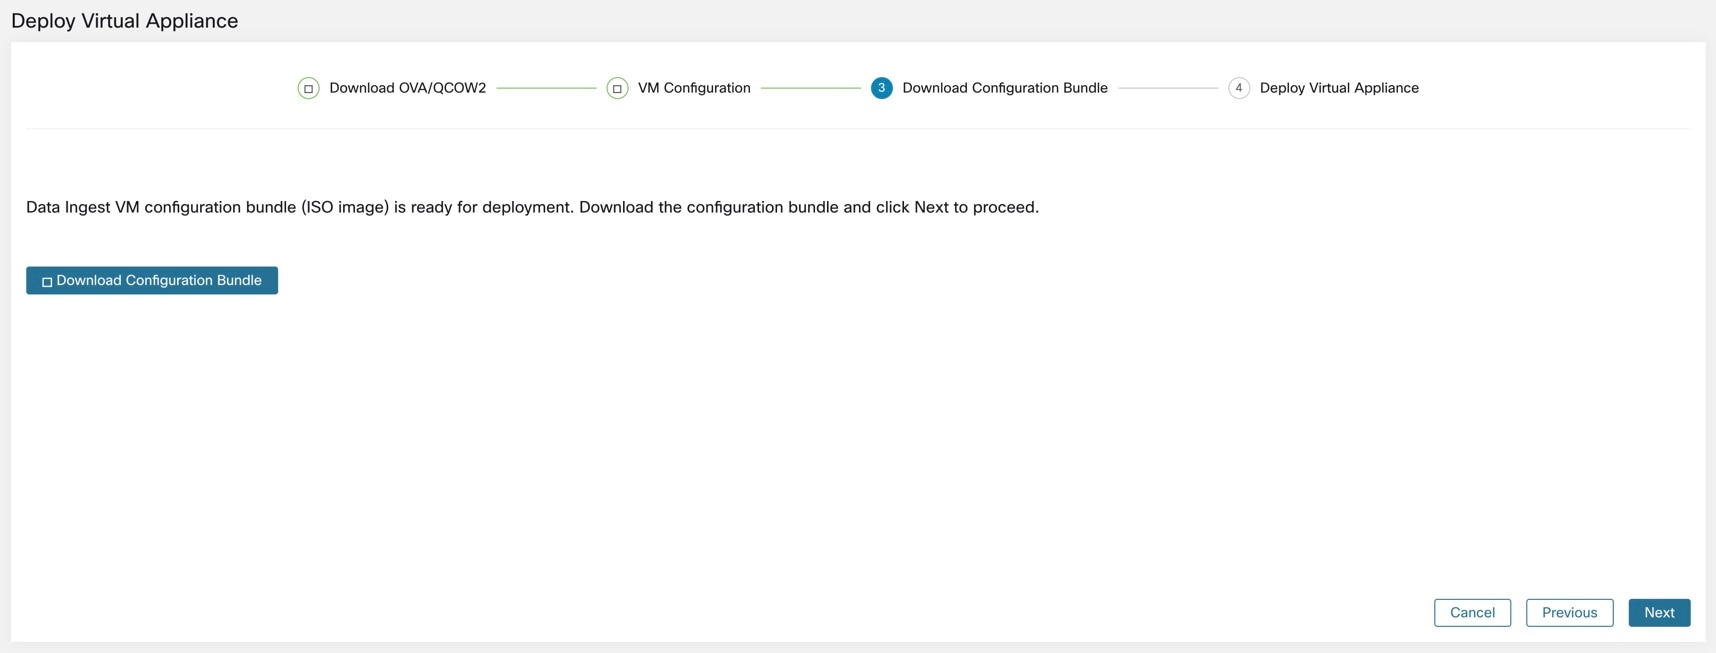 Download the VM configuration bundle